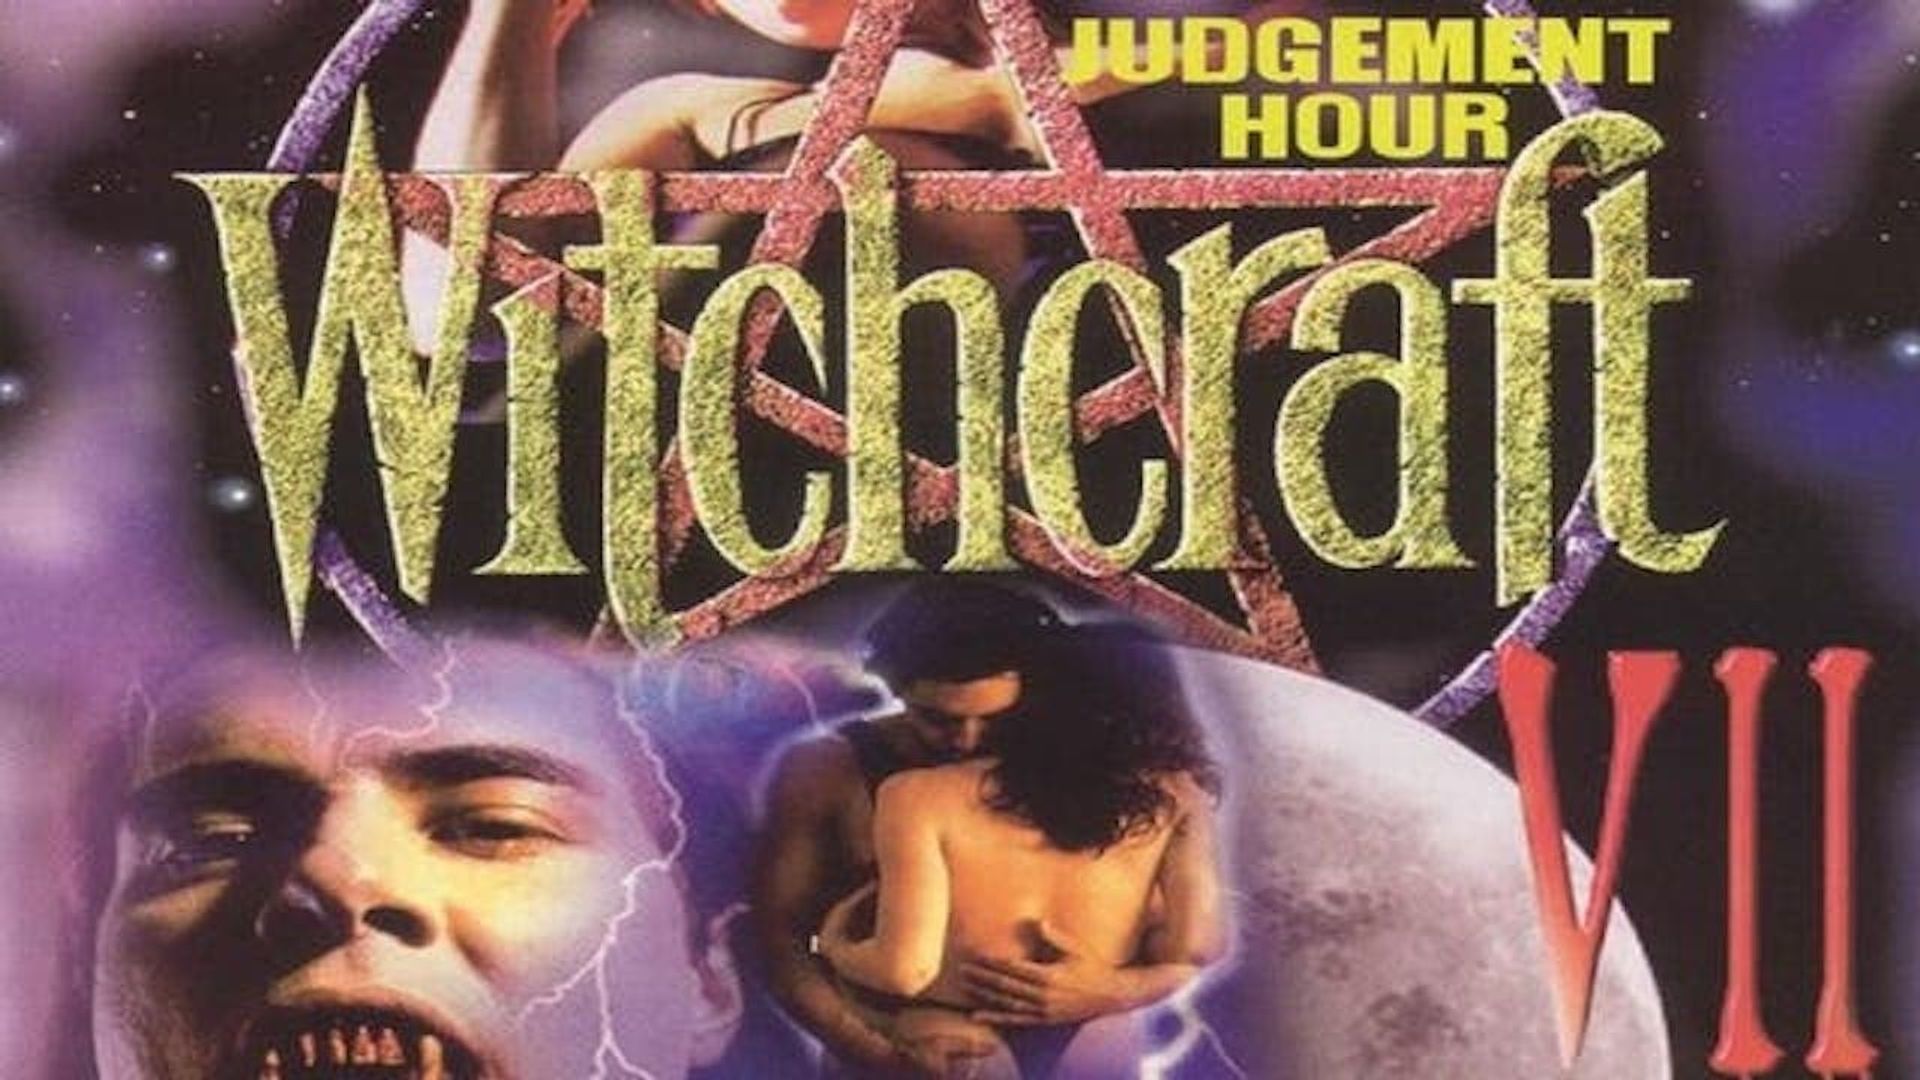 Witchcraft 7: Judgement Hour background